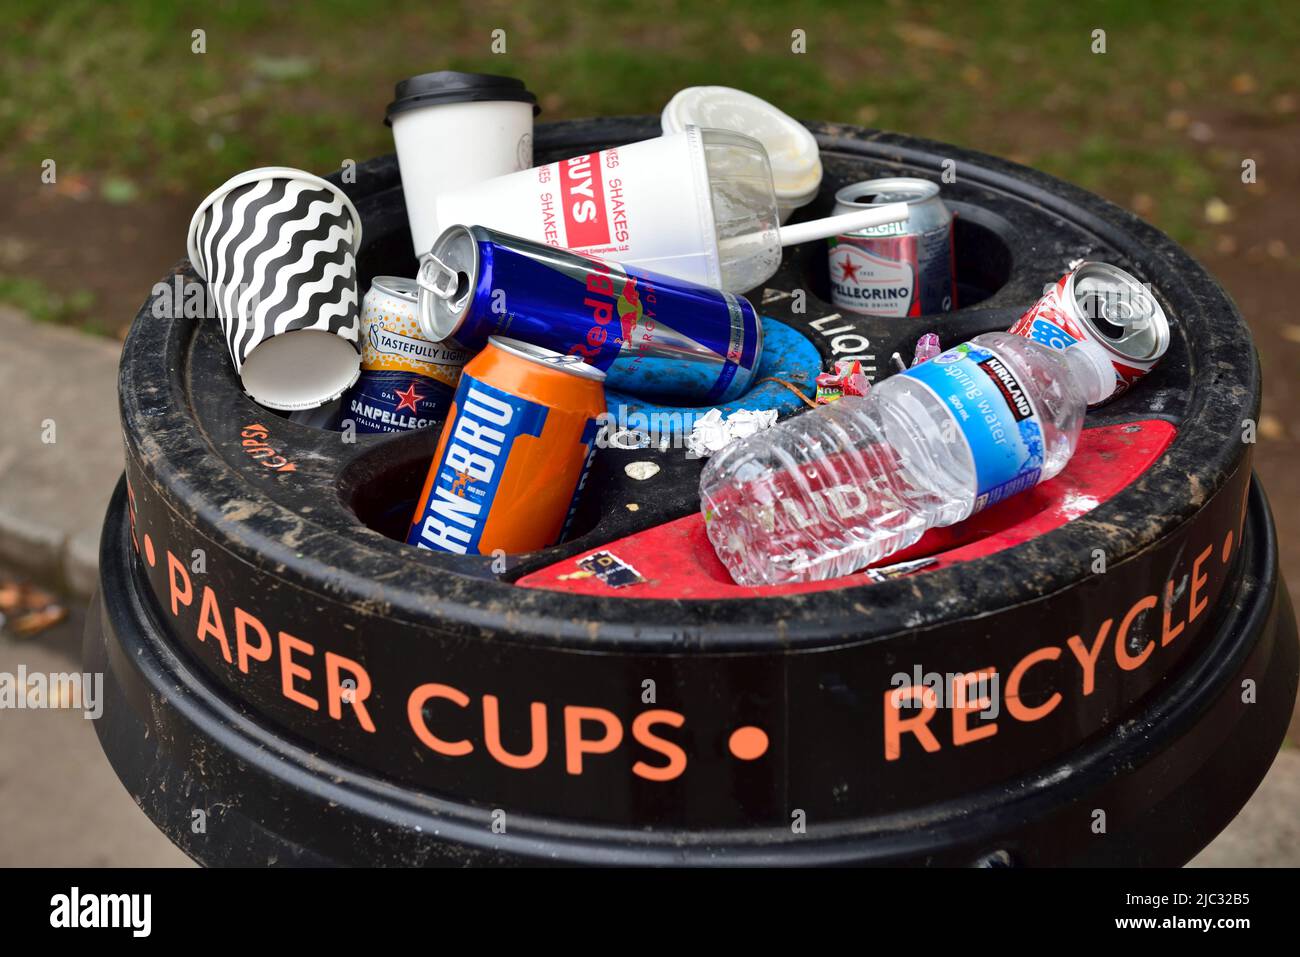 Bac de recyclage pour gobelets en papier remplis de canettes, de bouteilles en plastique, ainsi que de gobelets en papier Banque D'Images